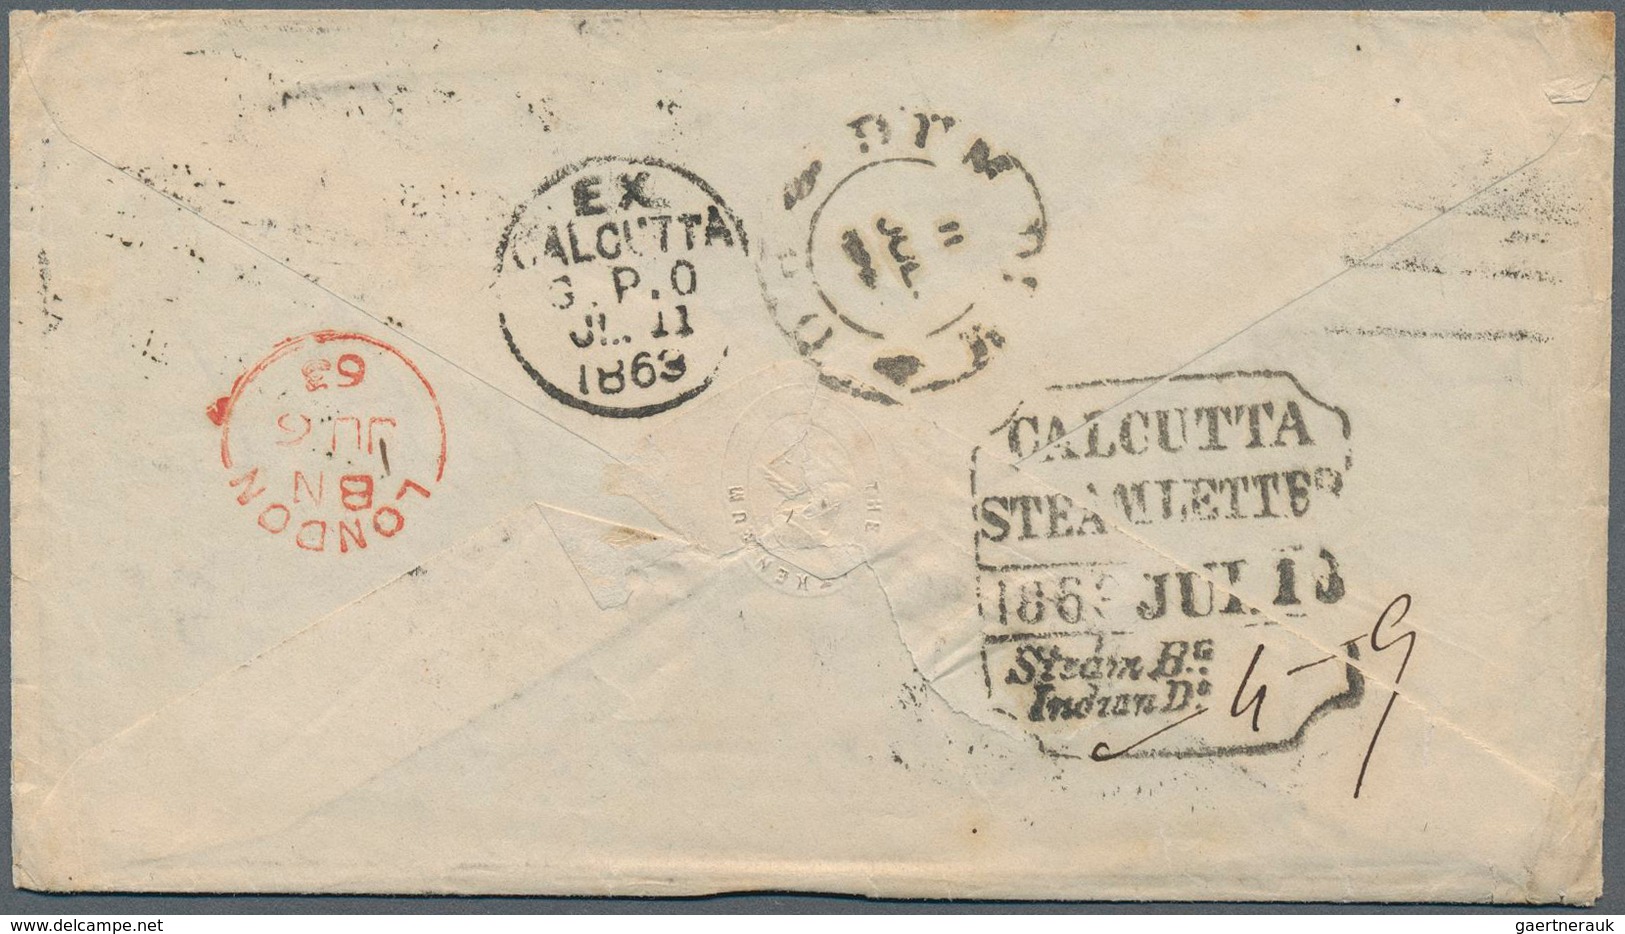 Indien: 1863 "CALCUTTA/STEAMLETTER/1863 JUL 10/Steam Bg./Indian Do." Framed Ship Letter Receipt Date - 1852 Provinz Von Sind